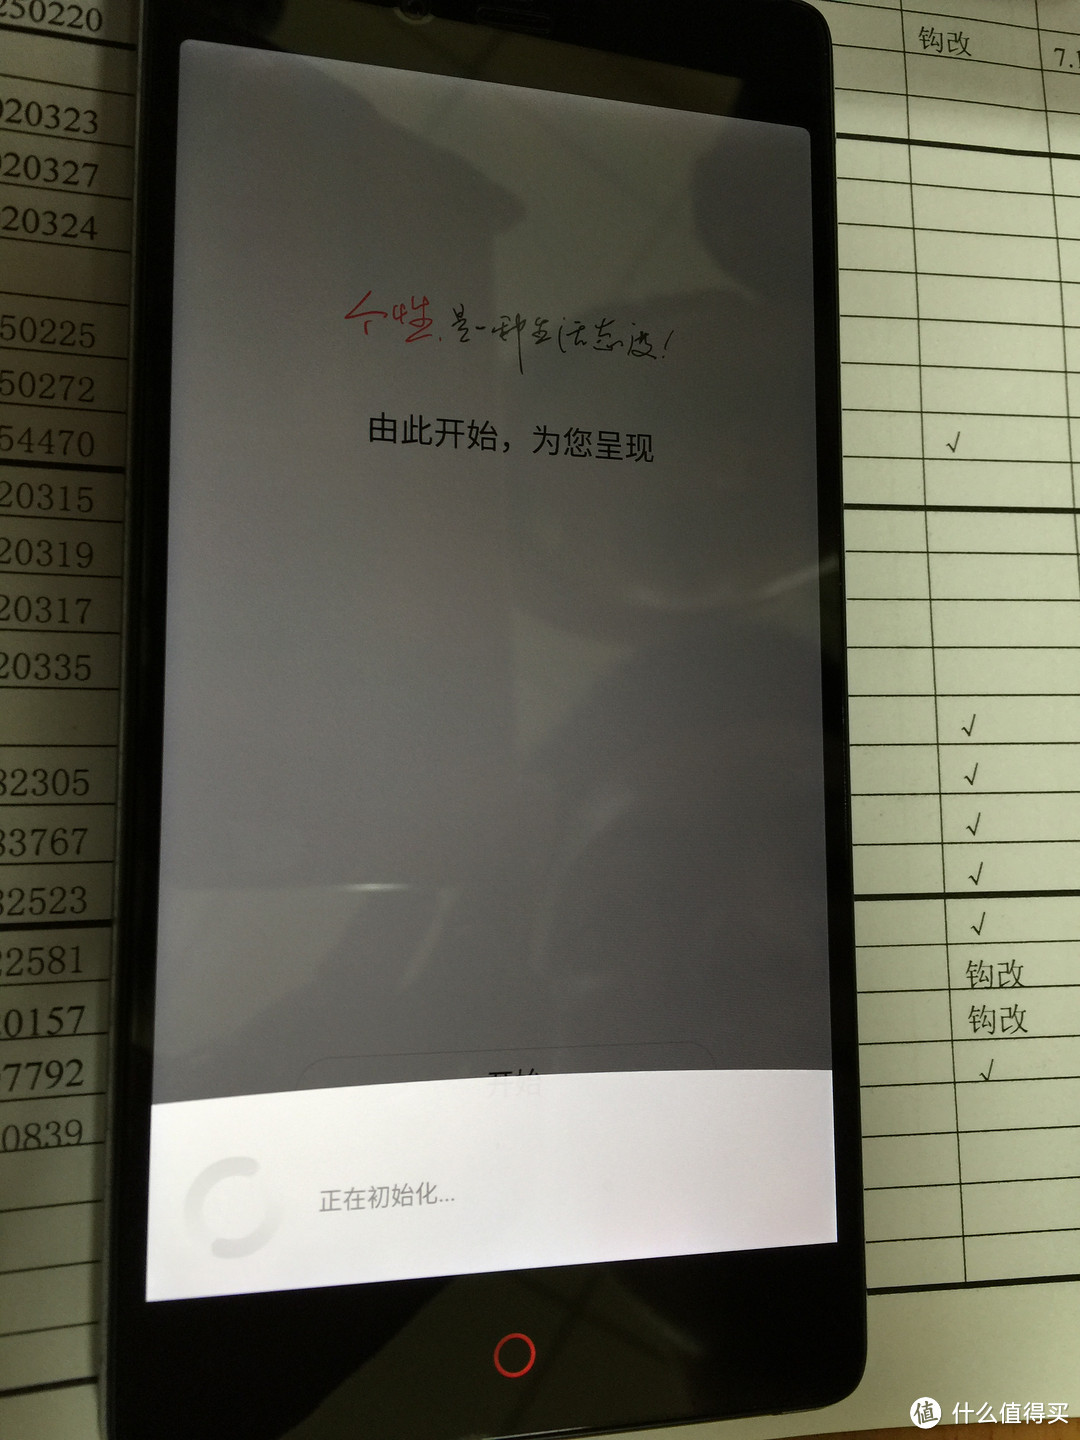 ZTE 中兴 努比亚 大牛4 Z9 Max 双卡双待手机 开箱